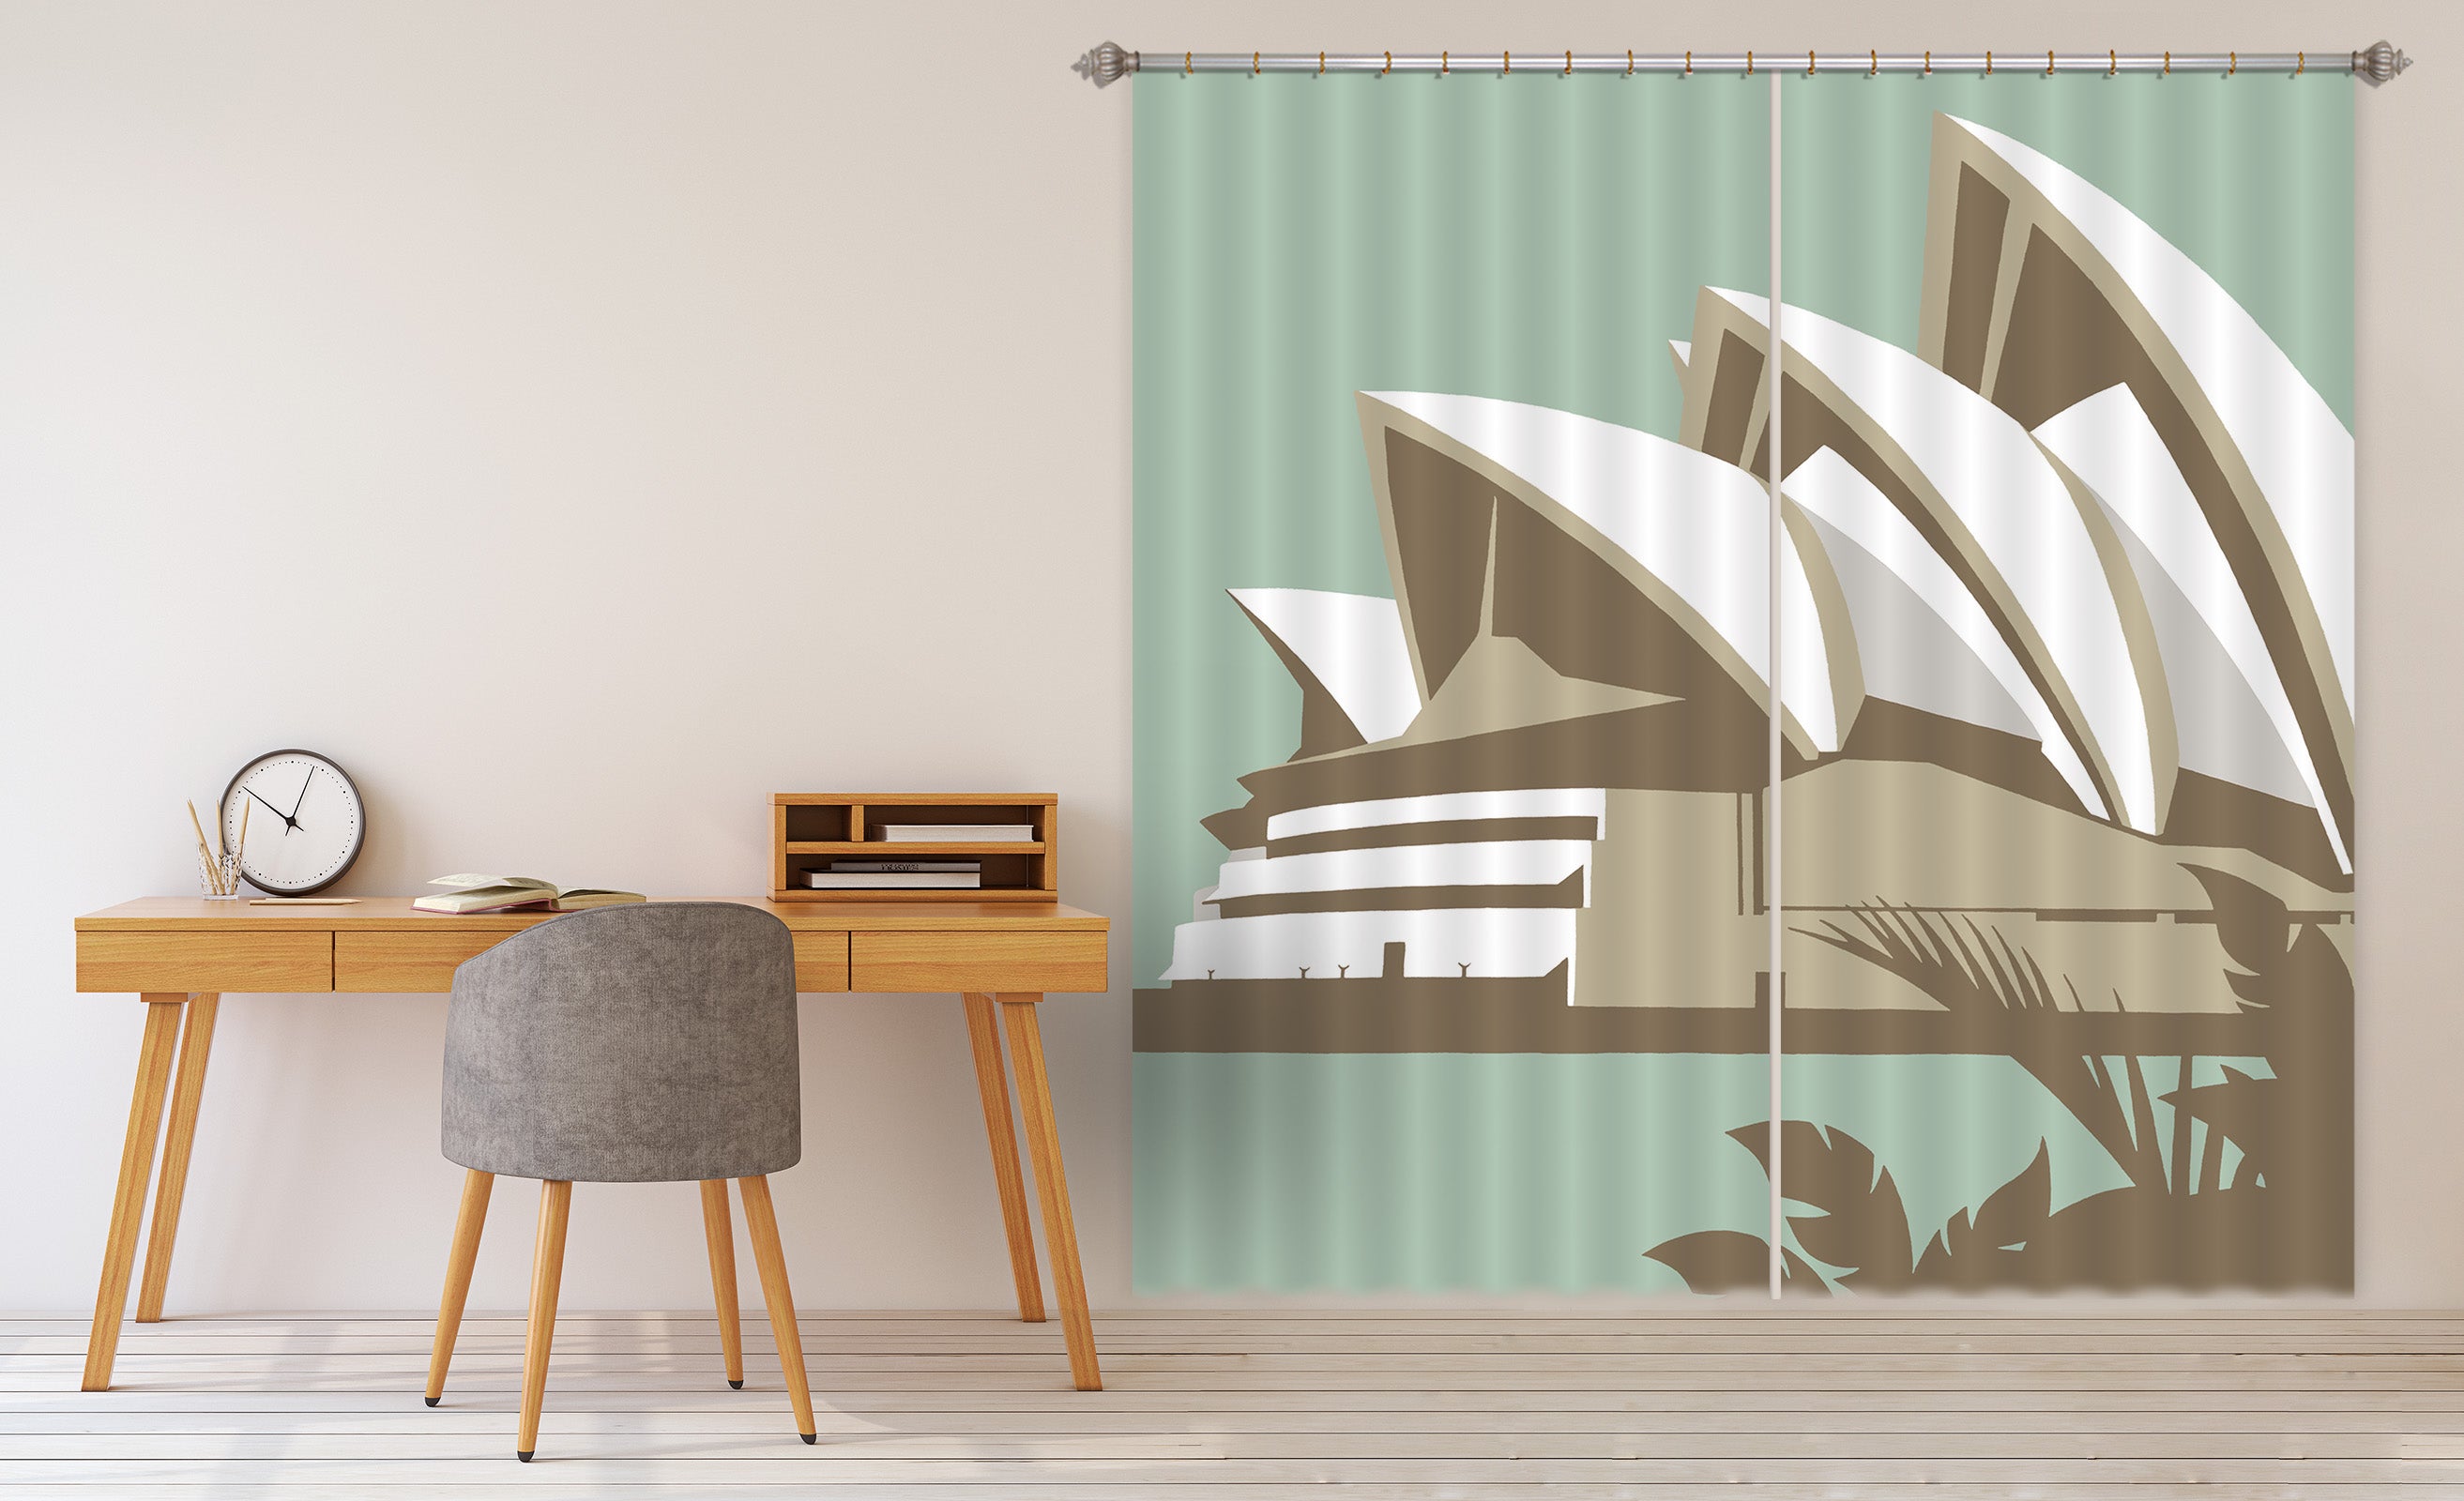 3D Sydney Opera House 164 Steve Read Curtain Curtains Drapes